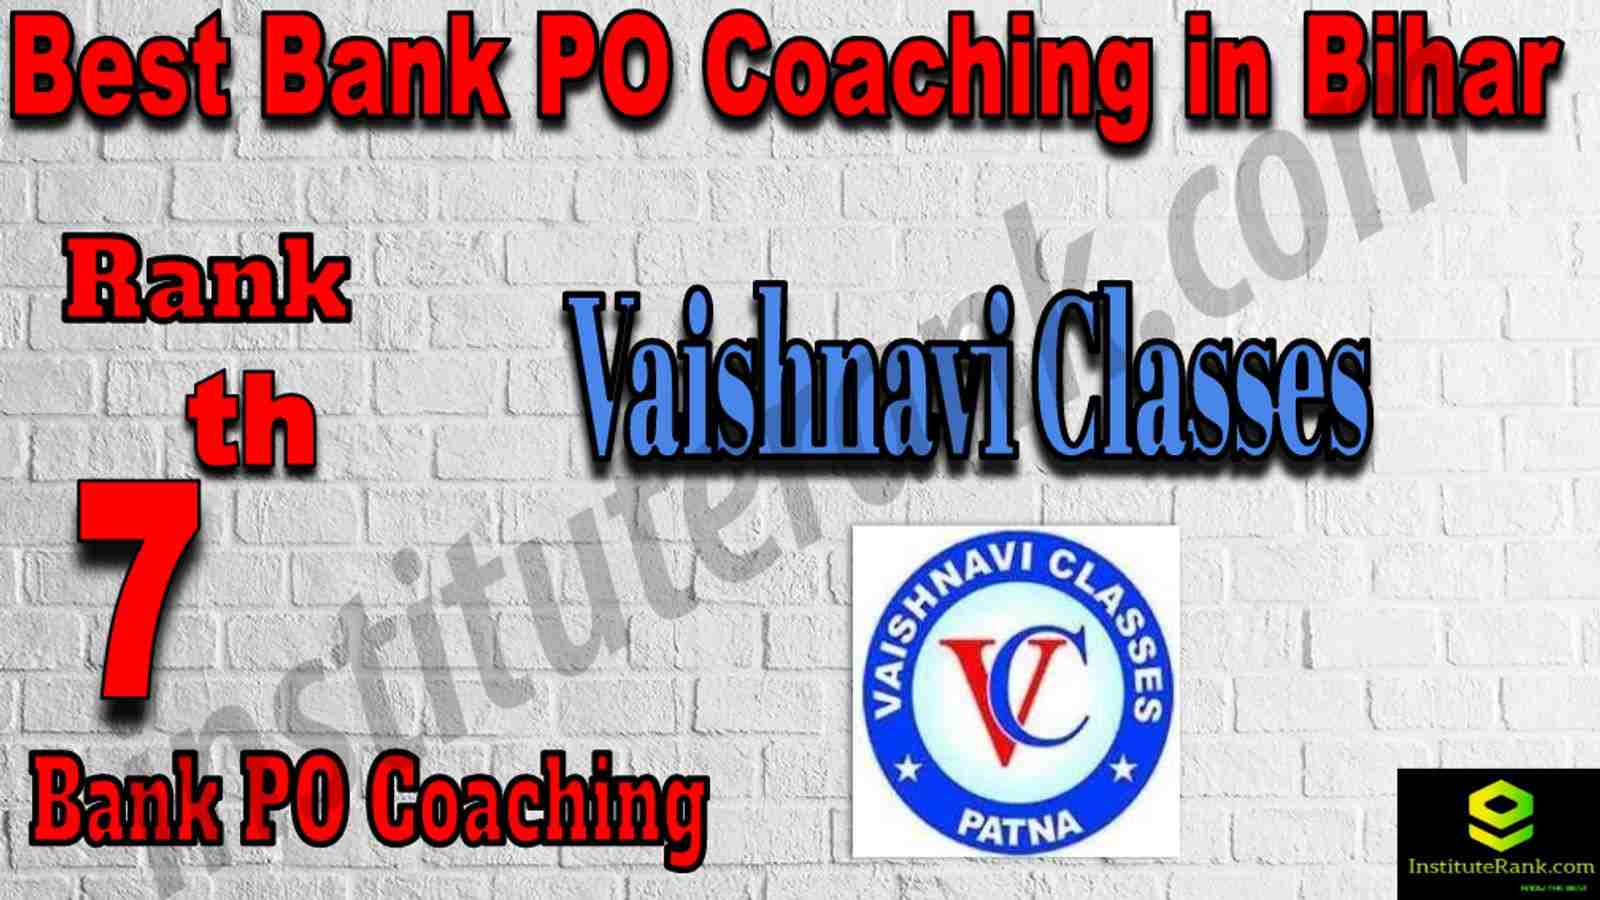 7th Best Bank PO Coaching in Bihar